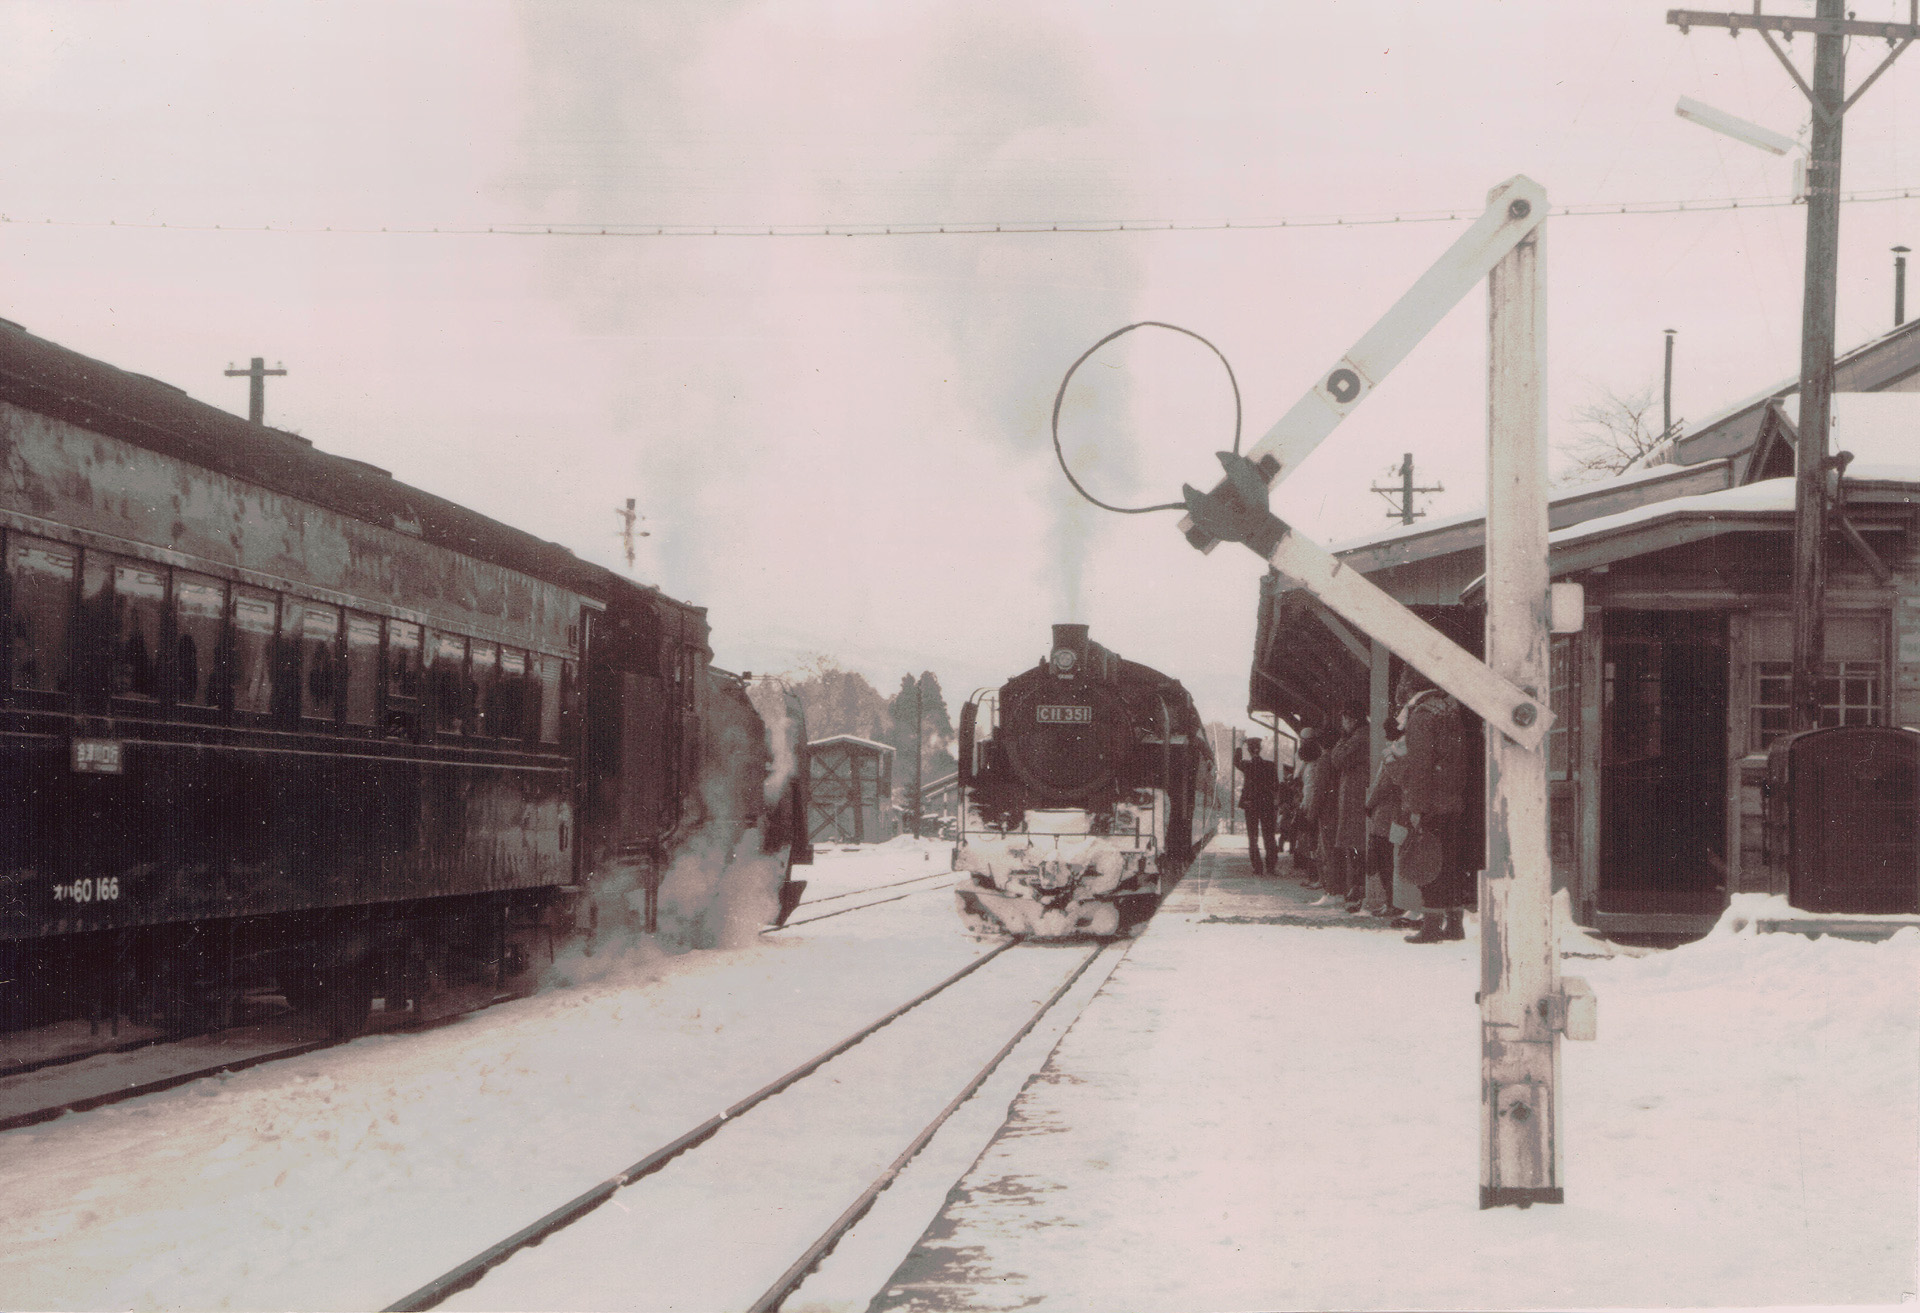 鉄道 蒸気機関車 セピア色の風景 1966年 壁紙19x1313 壁紙館